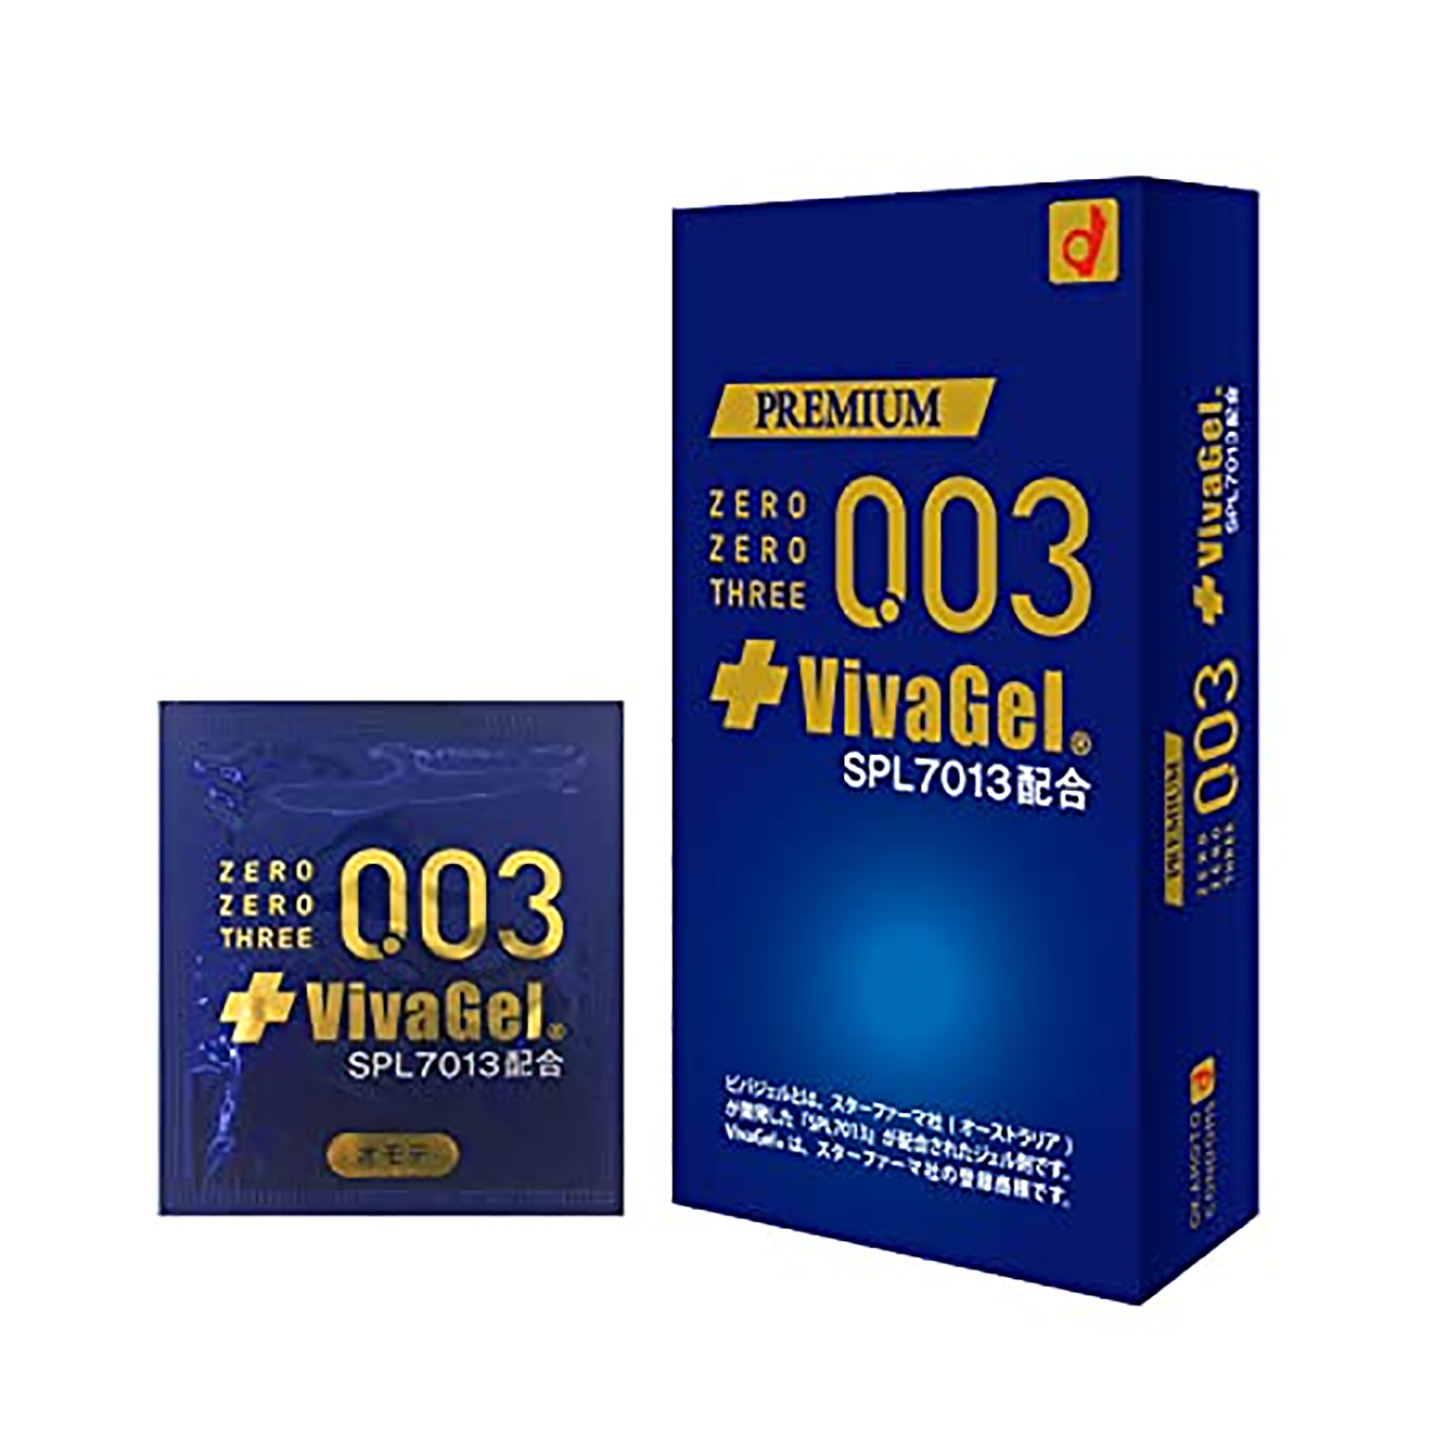 Okamoto 0.03 Vivagel Condom